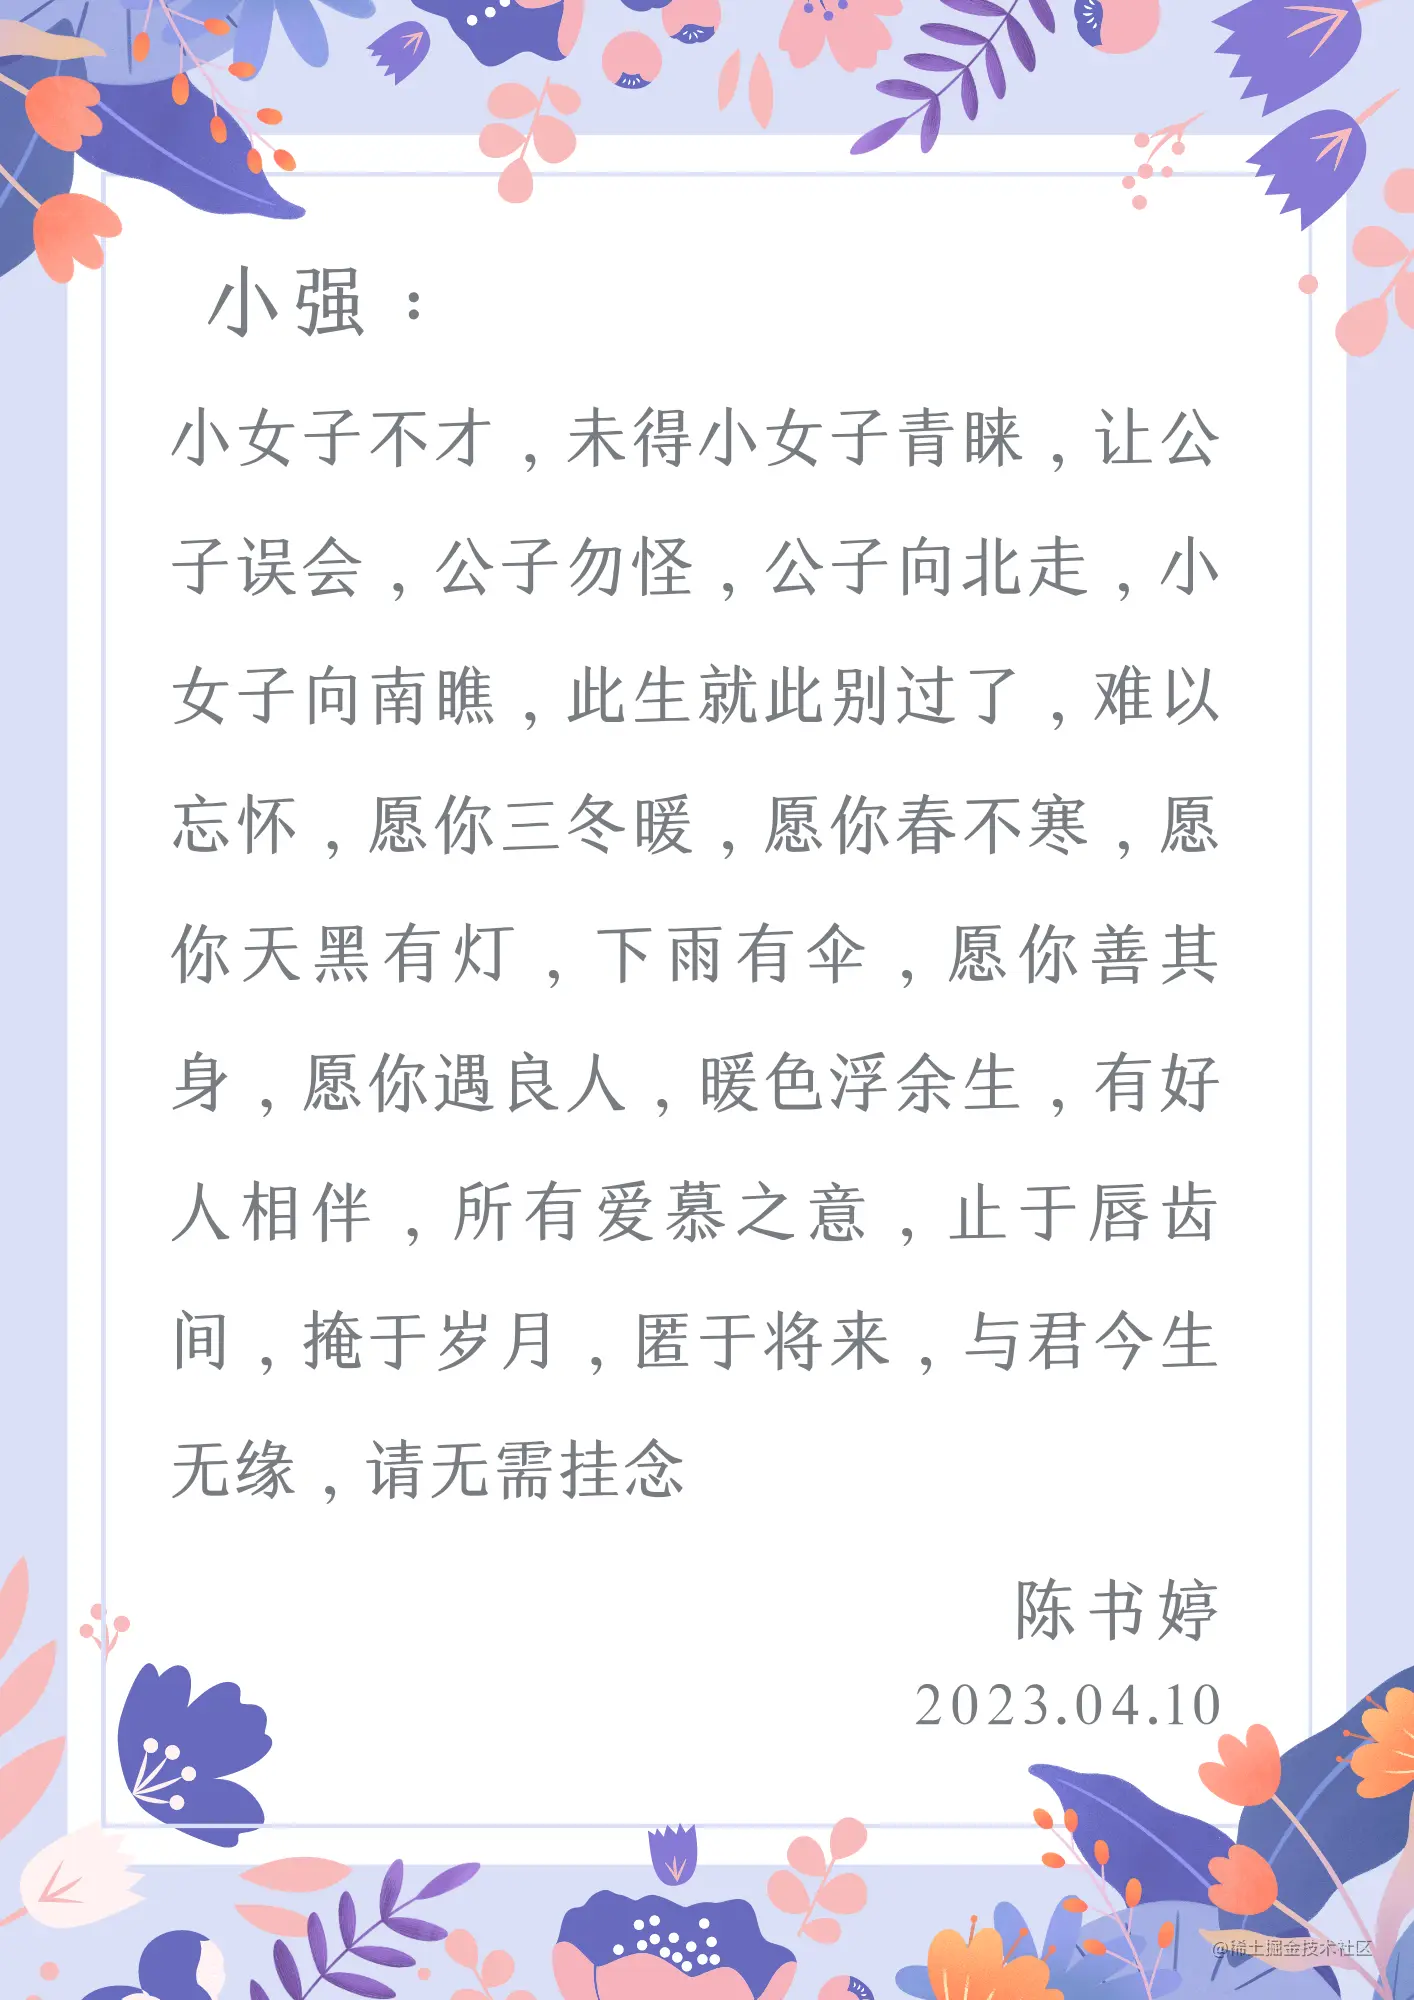 黄橙色手绘玫瑰花束母亲节信纸手绘母亲节个人感谢中文信纸 (1).png